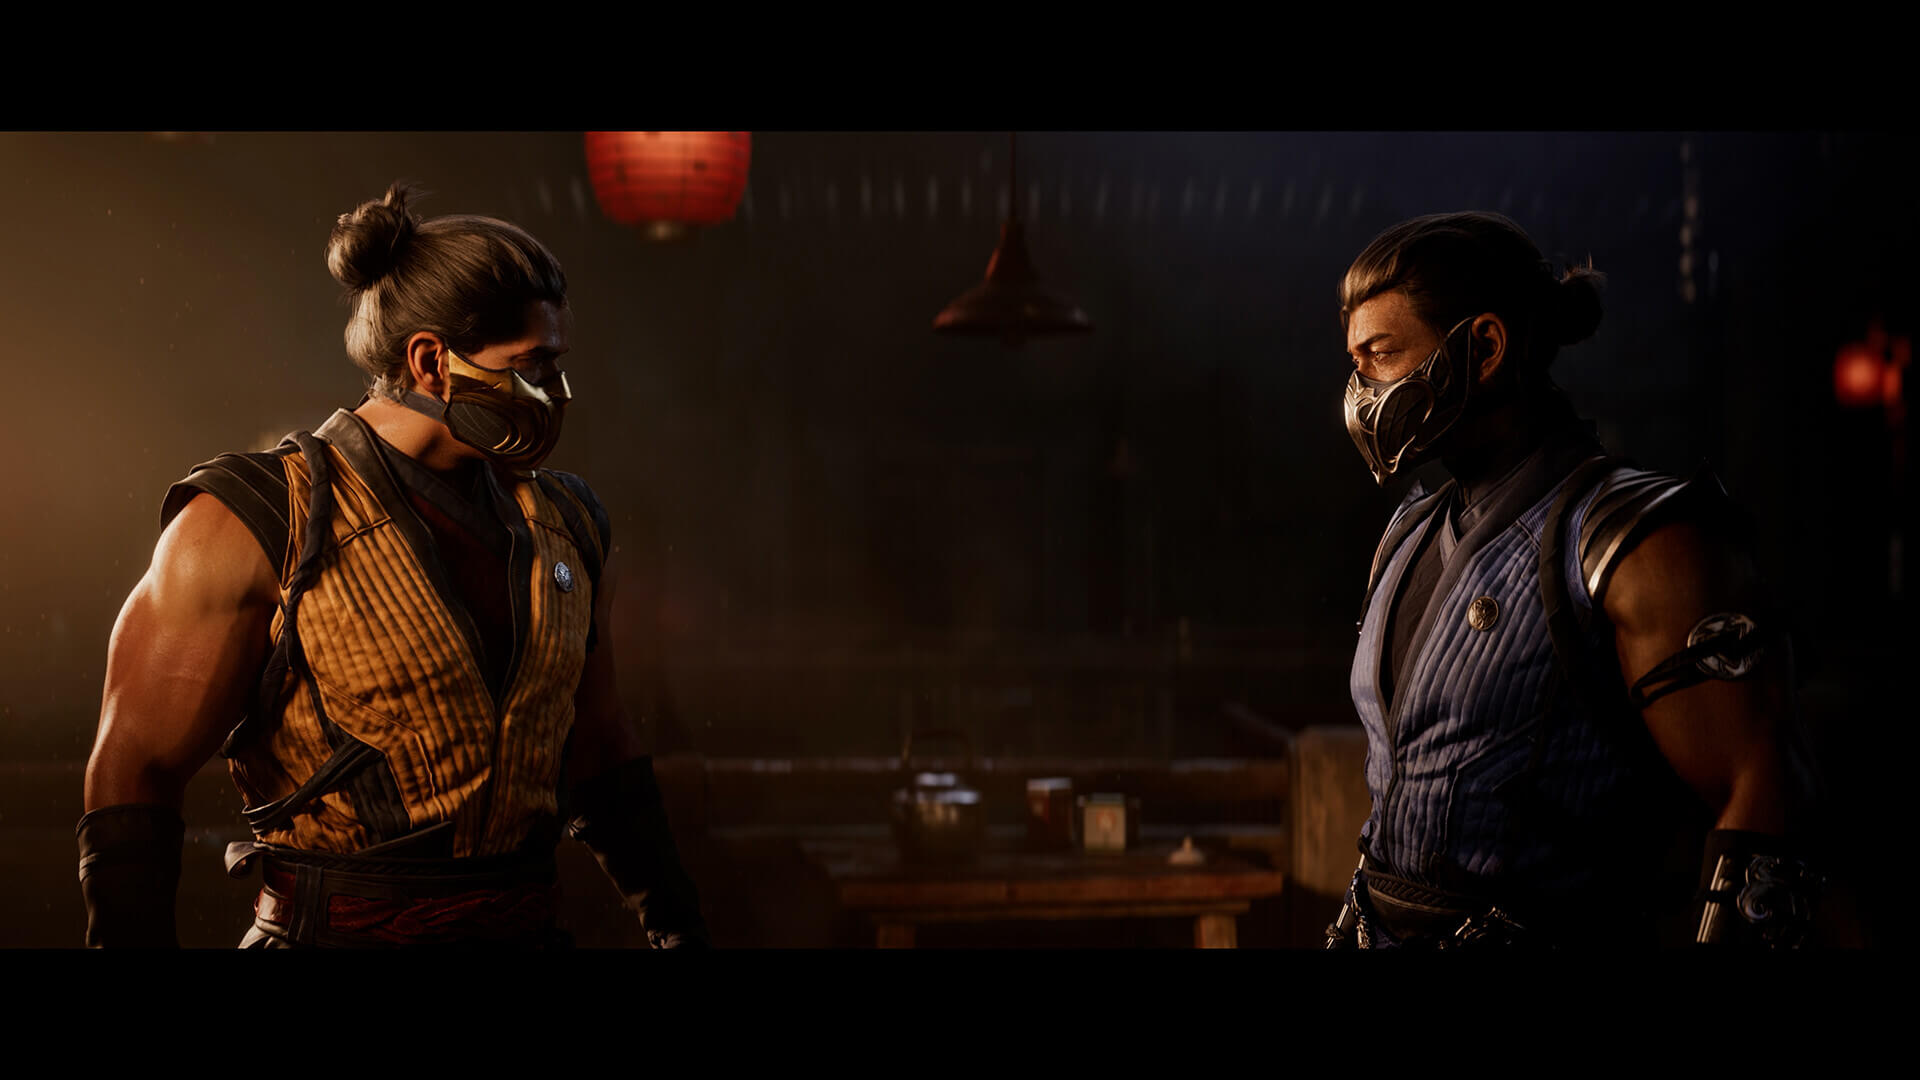 Mortal Kombat 1 vai ocupar 100 GB no PC; confira os requisitos do game